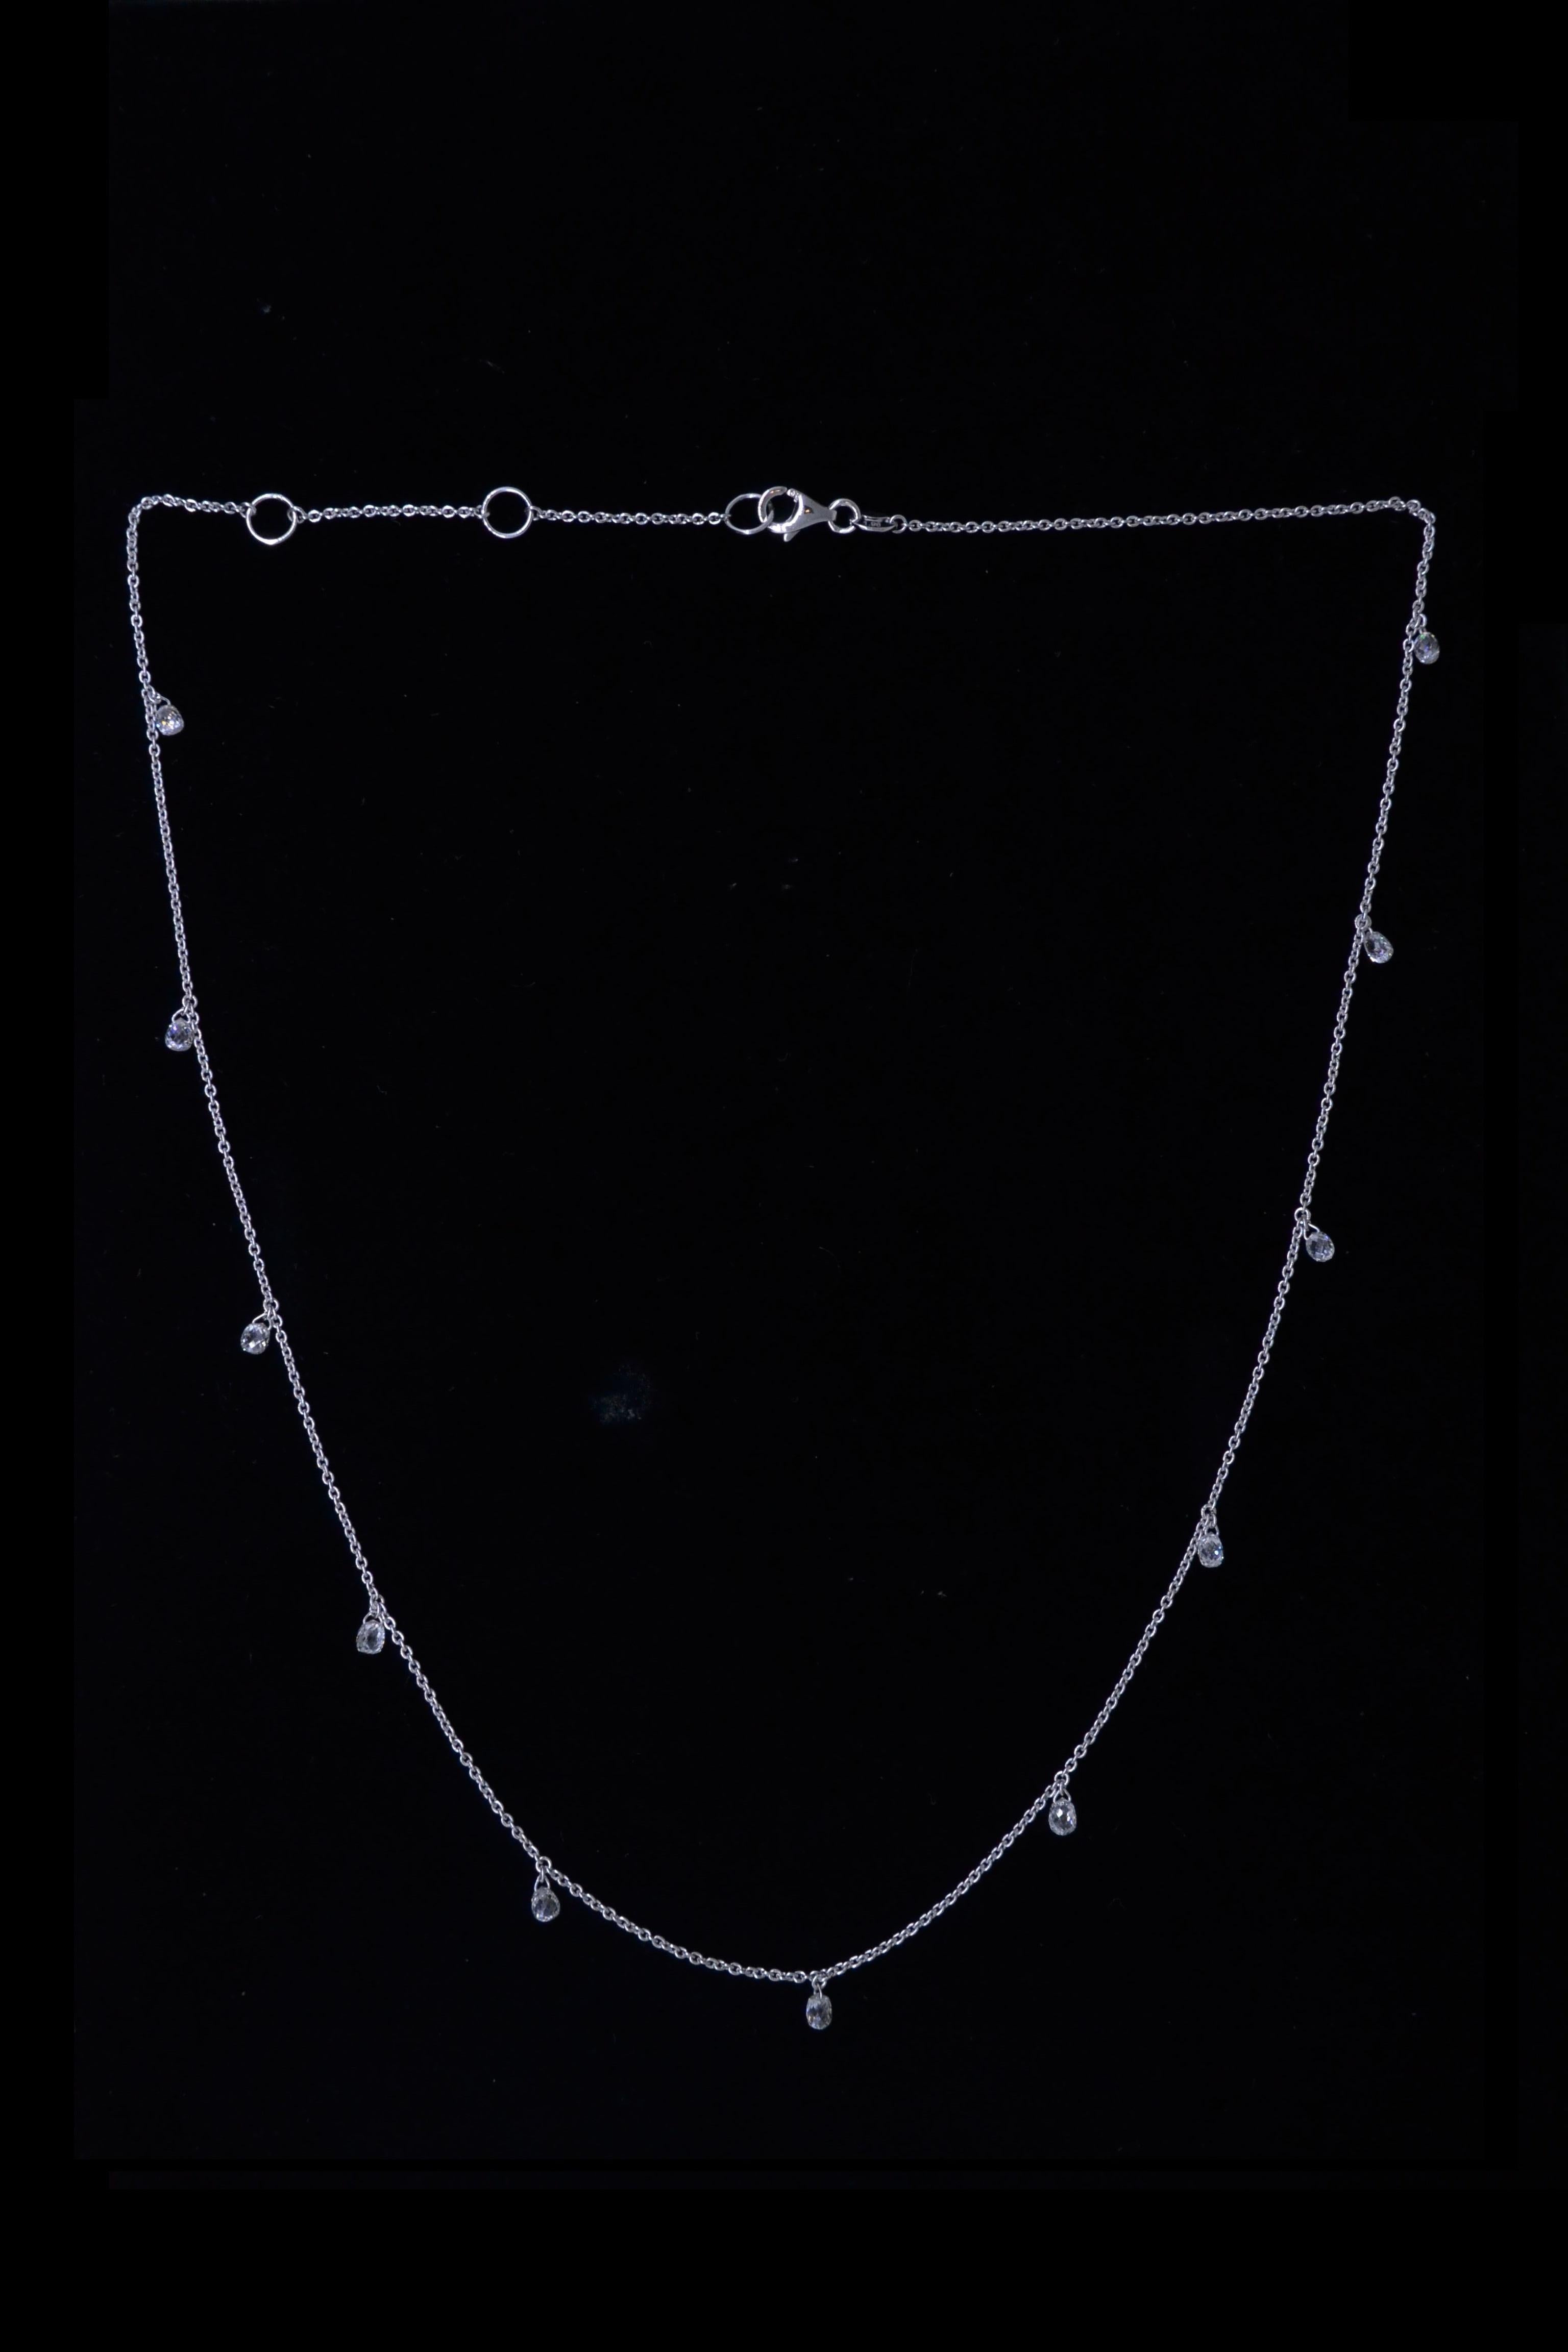 Briolette Cut JR 1.96 Carat Diamond Briolette Dangling Necklace 18 Karat White Gold For Sale